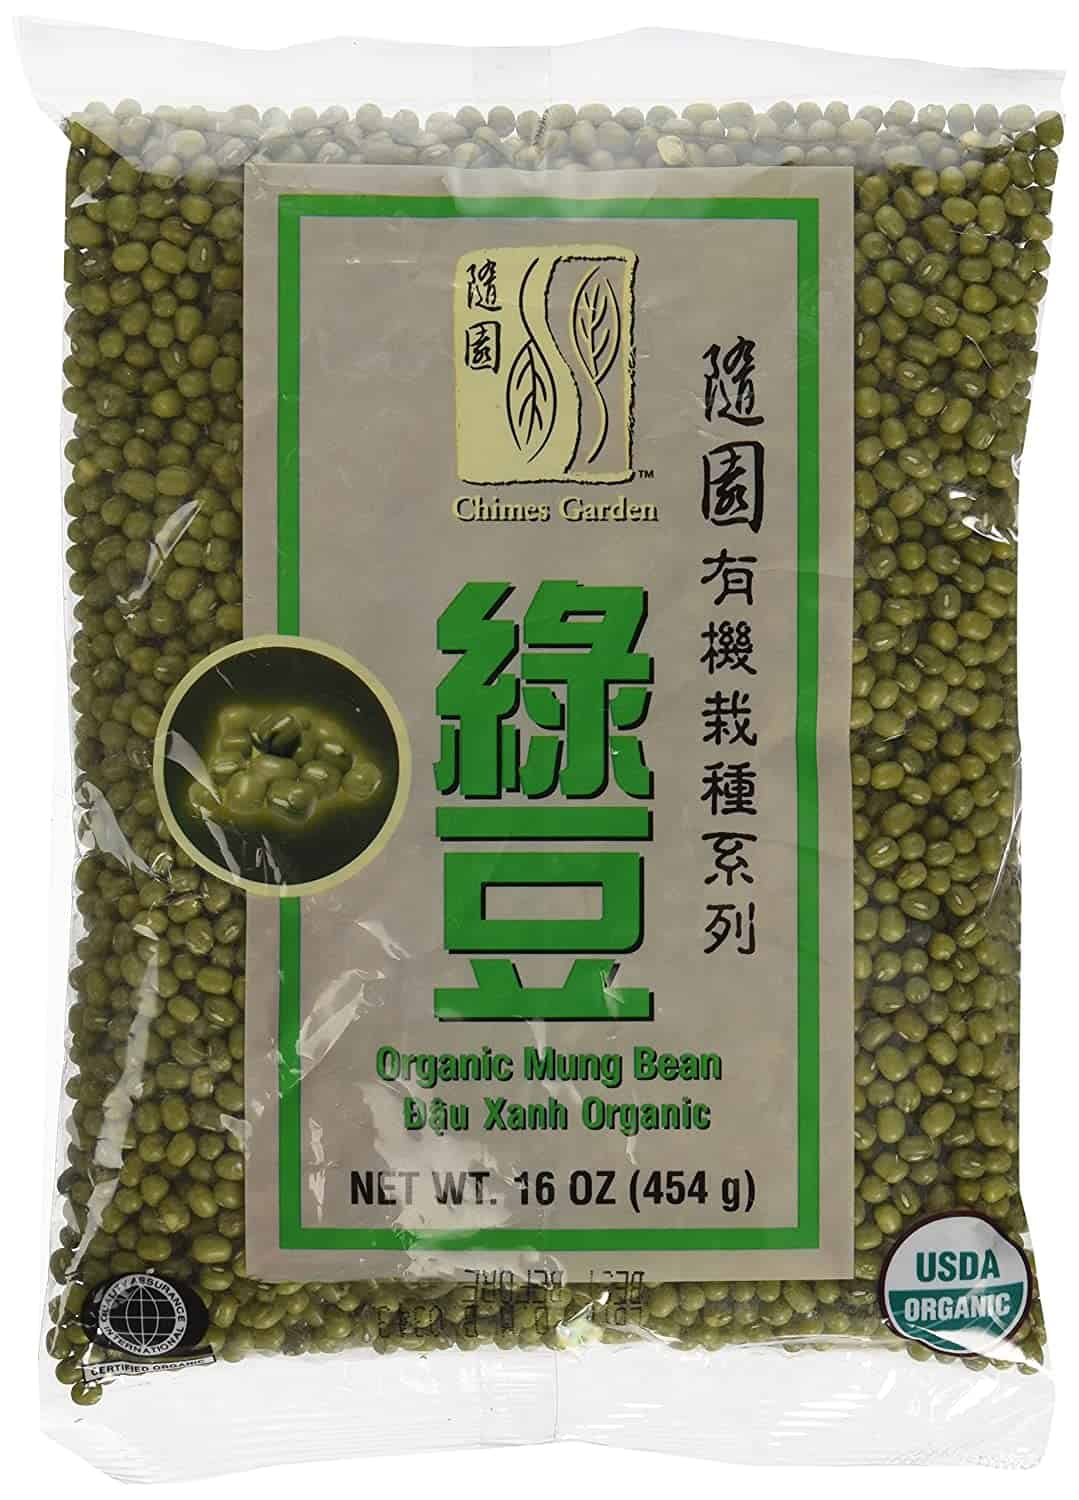 Bästa övergripande mungbönor: Chimes Garden Organic Mung Beans